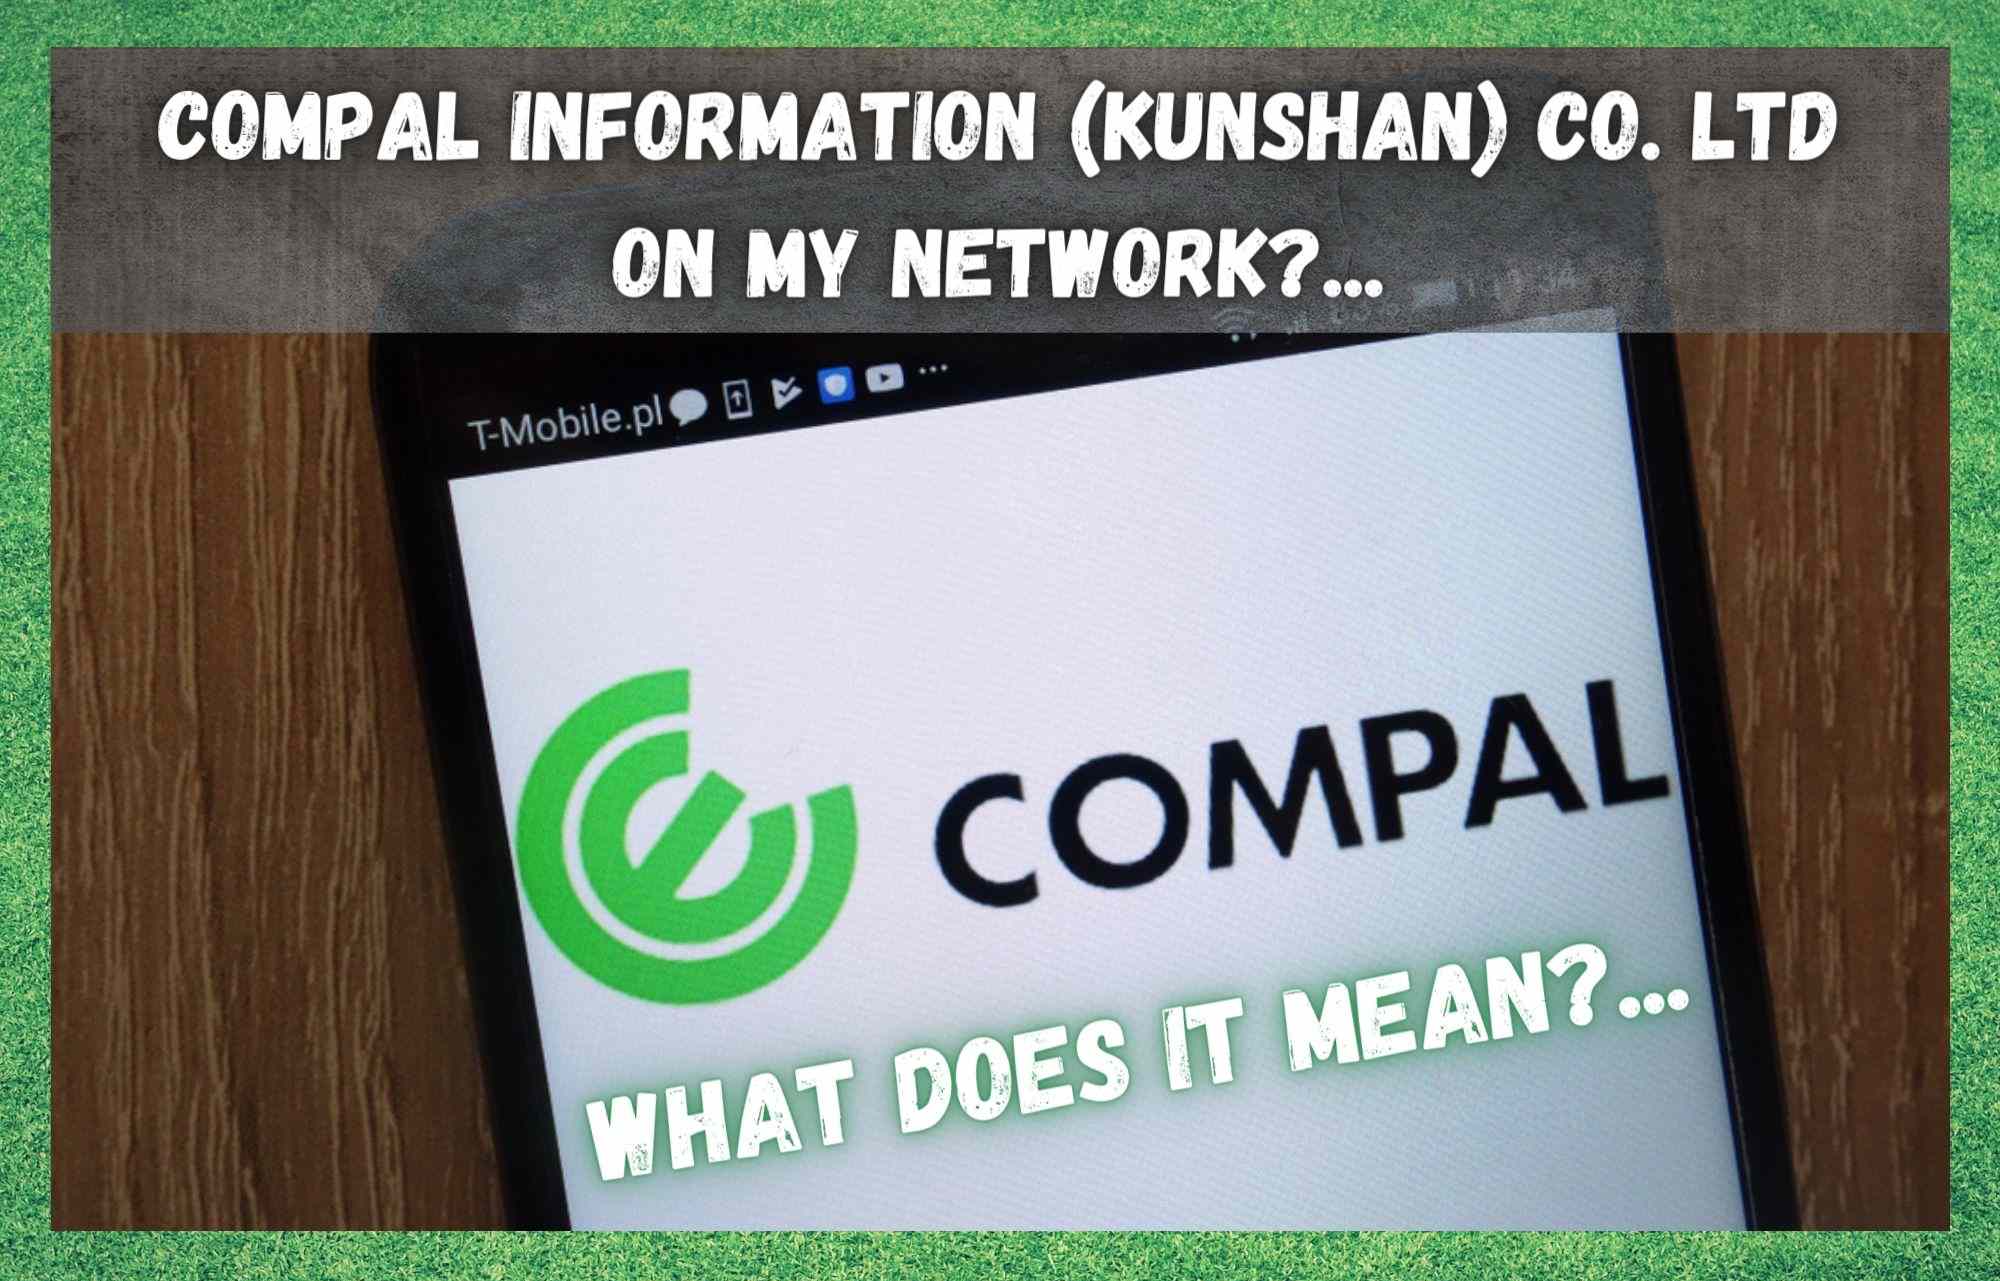 Compal Information (kunshan) co. زما په شبکه کې ltd: دا څه معنی لري؟